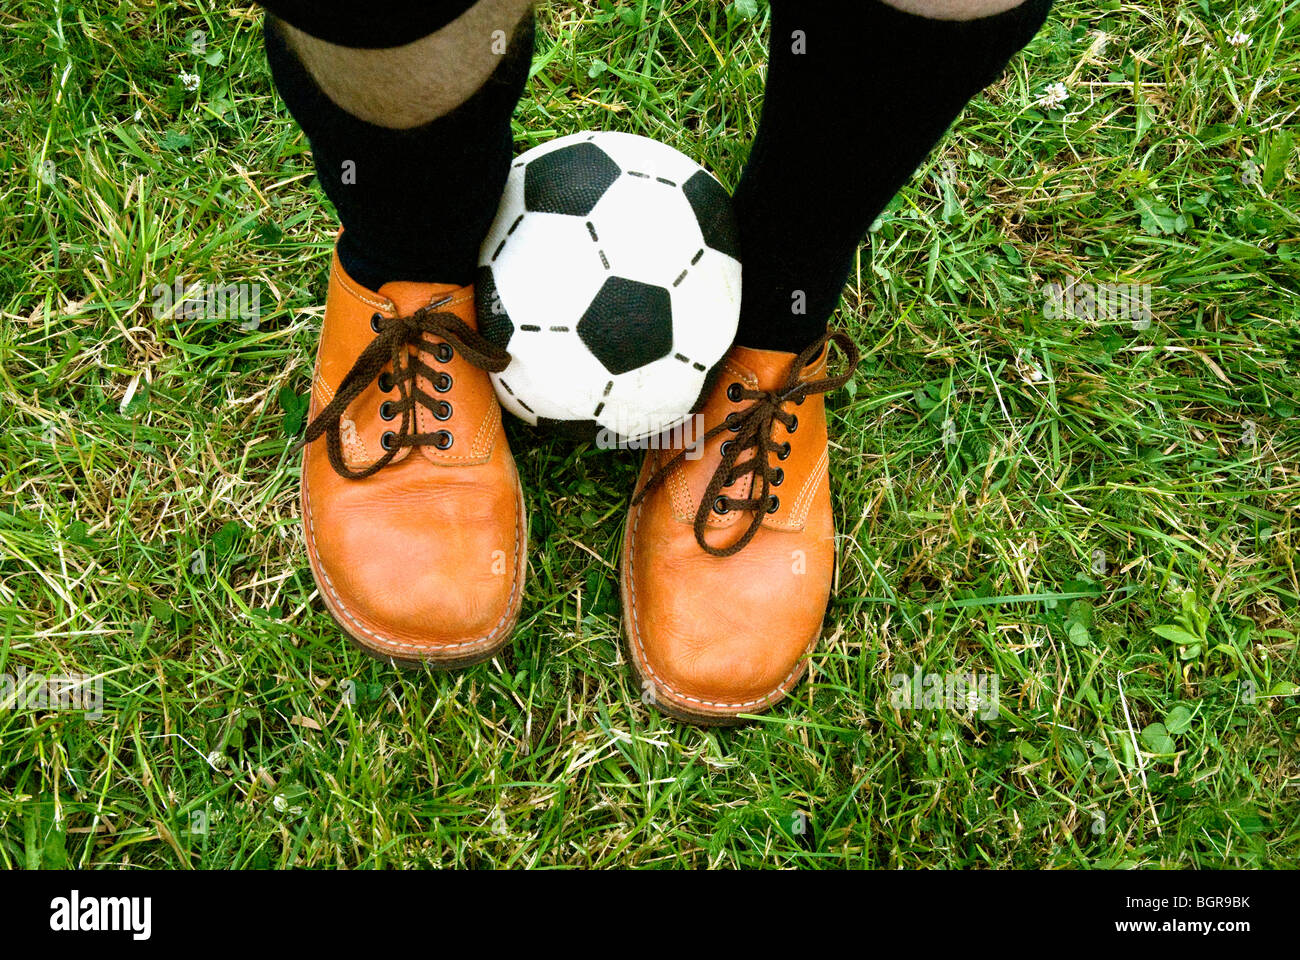 Un ballon de football entre les deux pieds. Banque D'Images